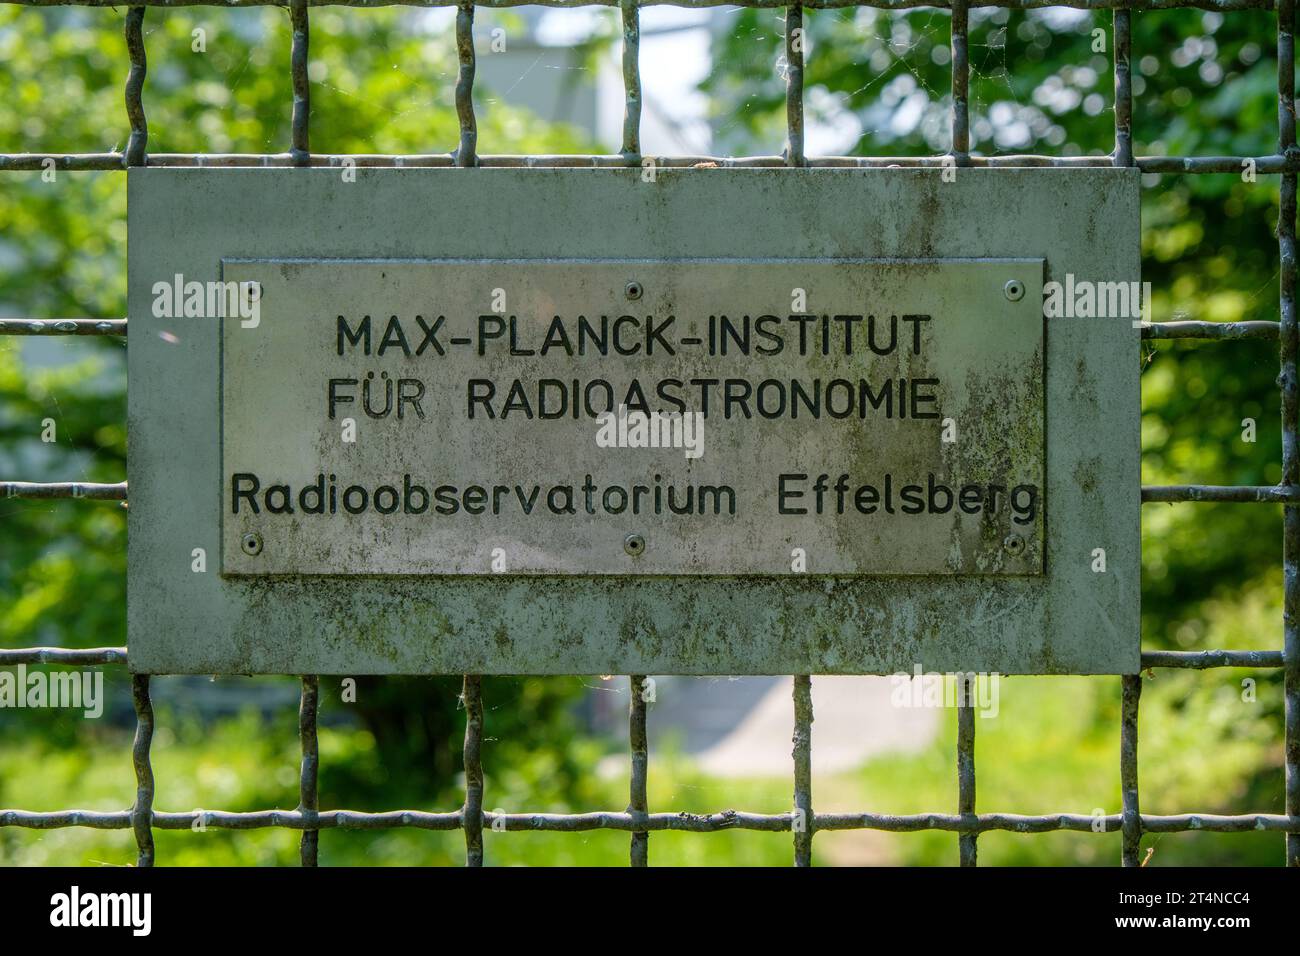 Signalisation à la clôture du Max-Planck-Institut für Radioastronomie (institut de radioastronomie) à Effelsberg, Allemagne Banque D'Images